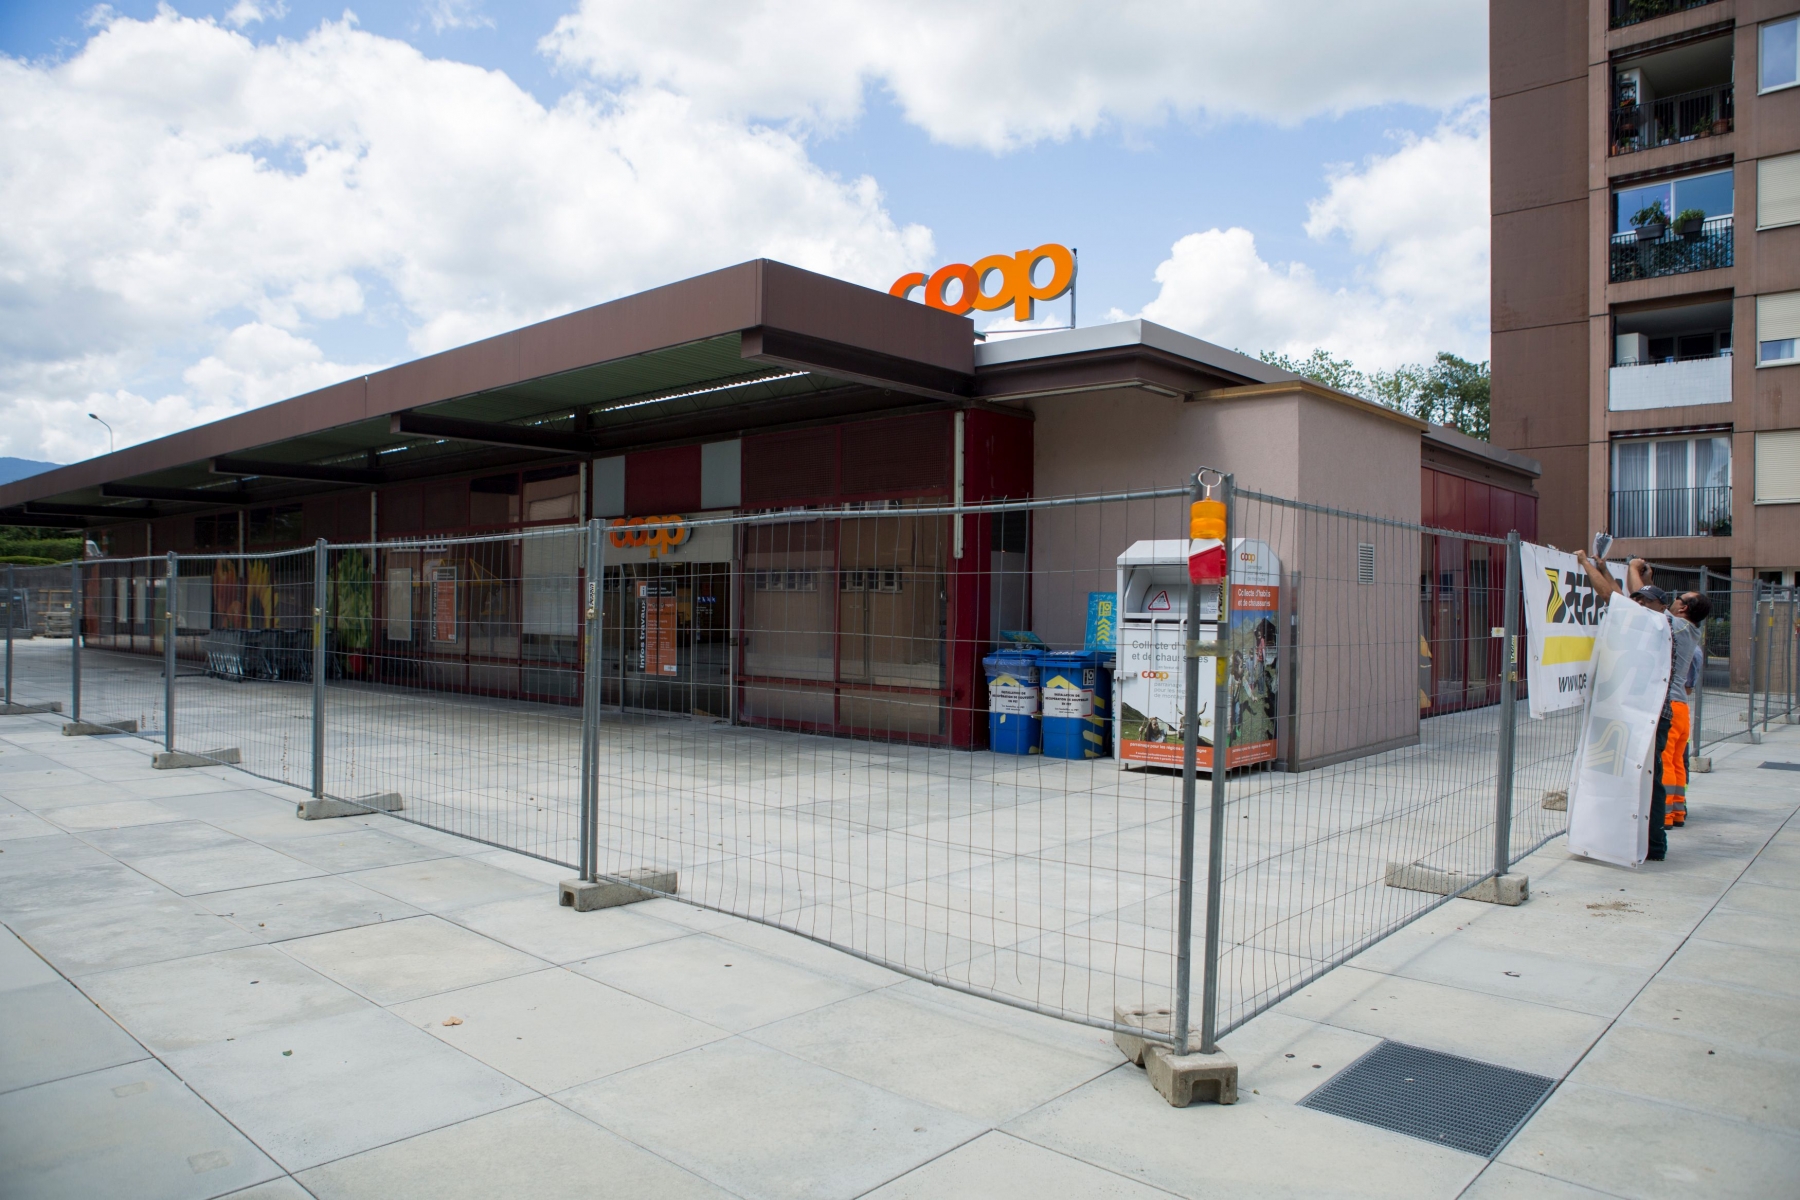 Nyon, lundi 27 juillet 2015
Le supermarché Coop de La Levratte fermé par travaux à Nyon

Sigfredo Haro